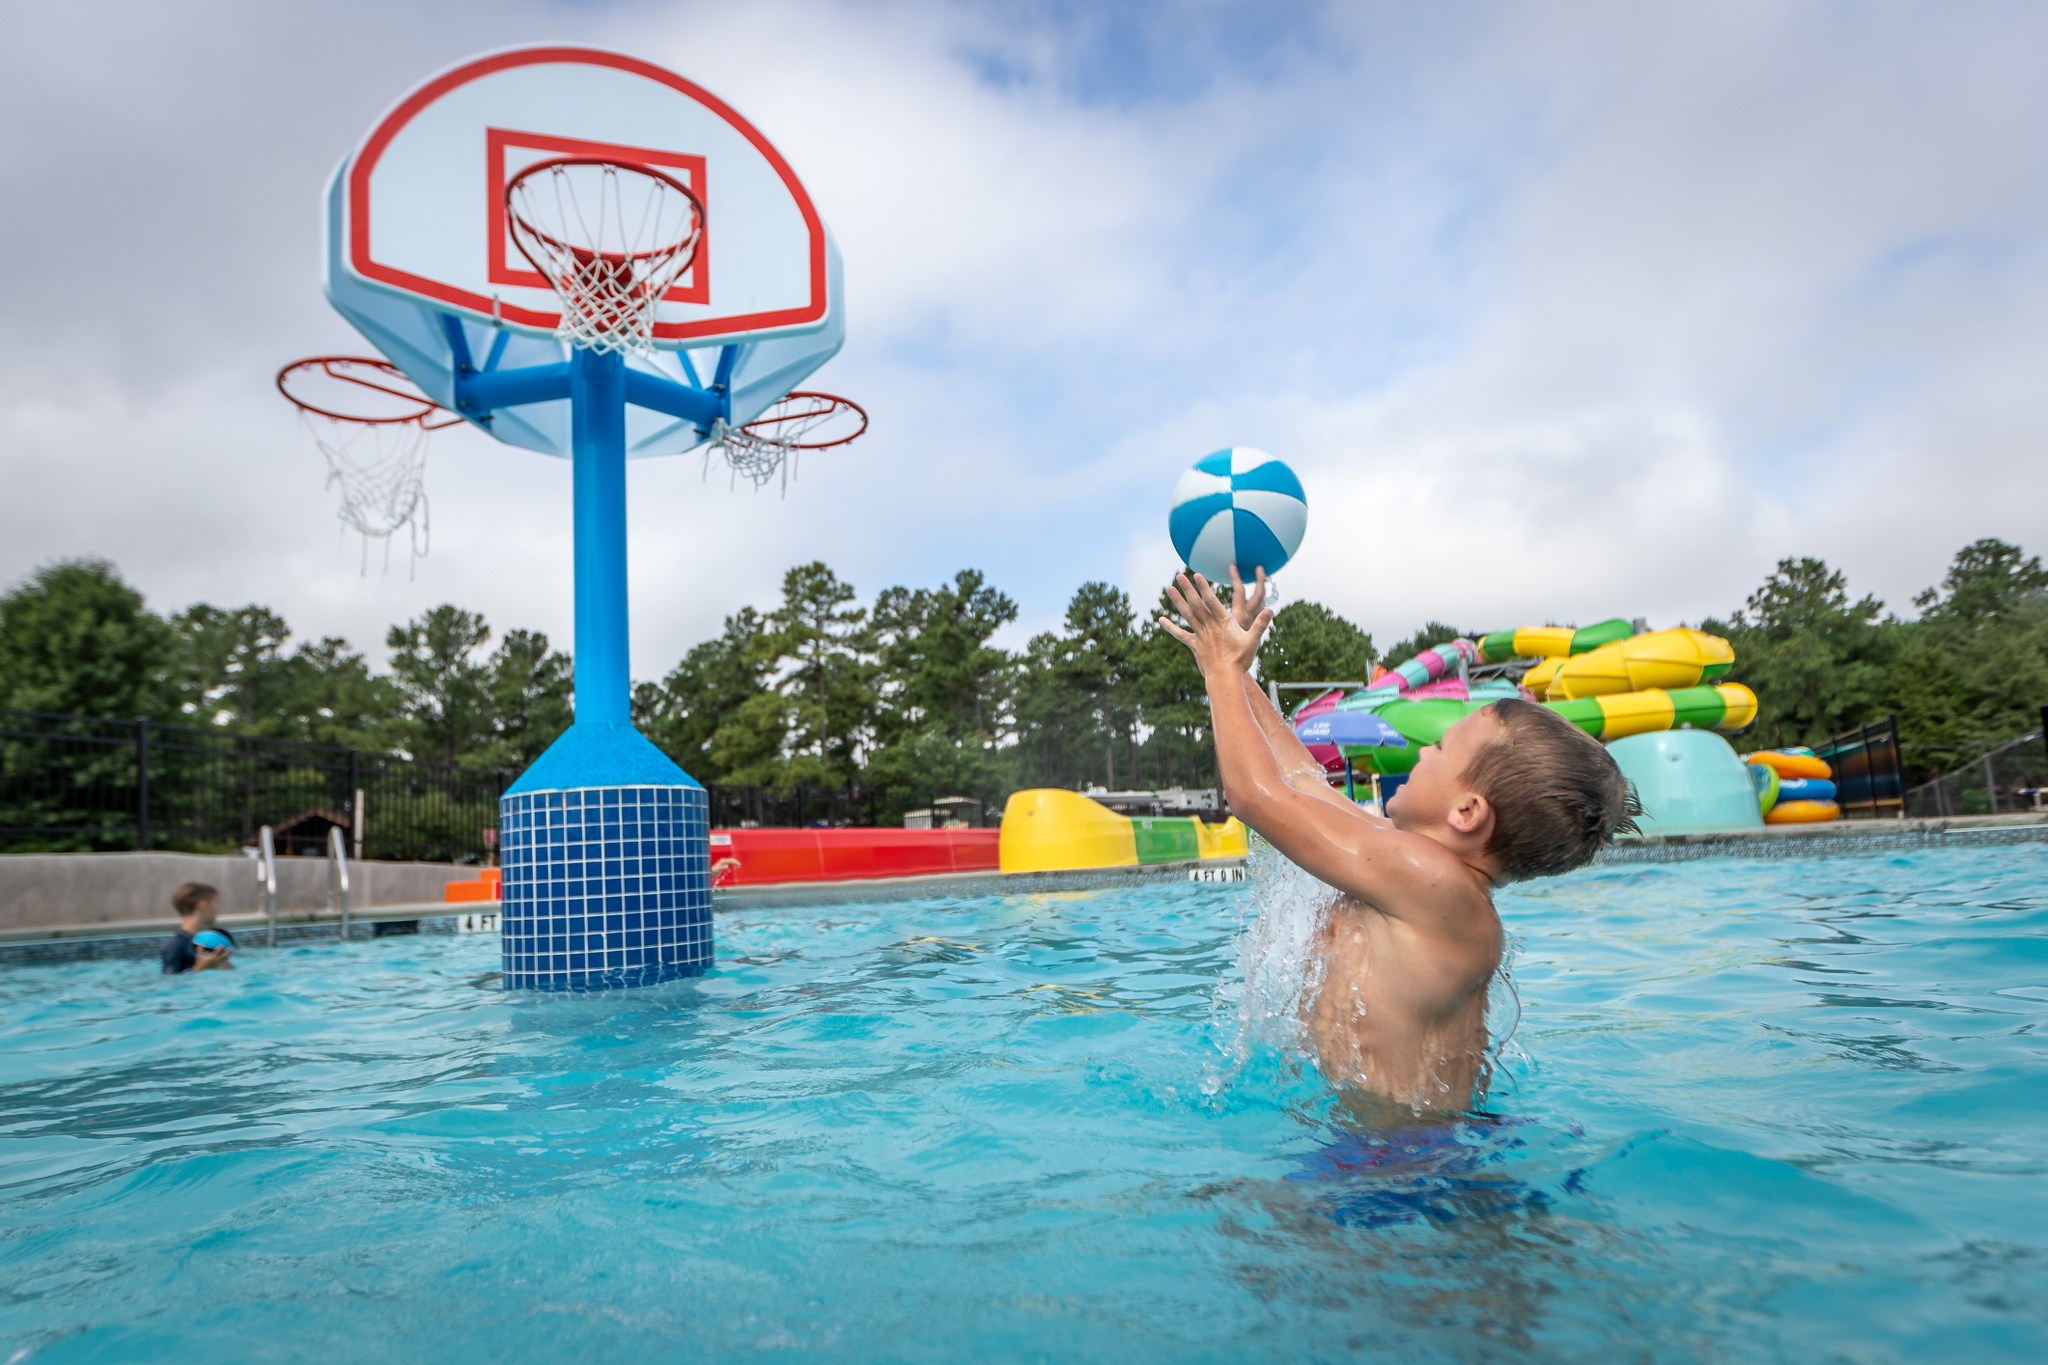 Boy shoot hoops in pool with Spectrum's Recreational Pool Basketball Hoop